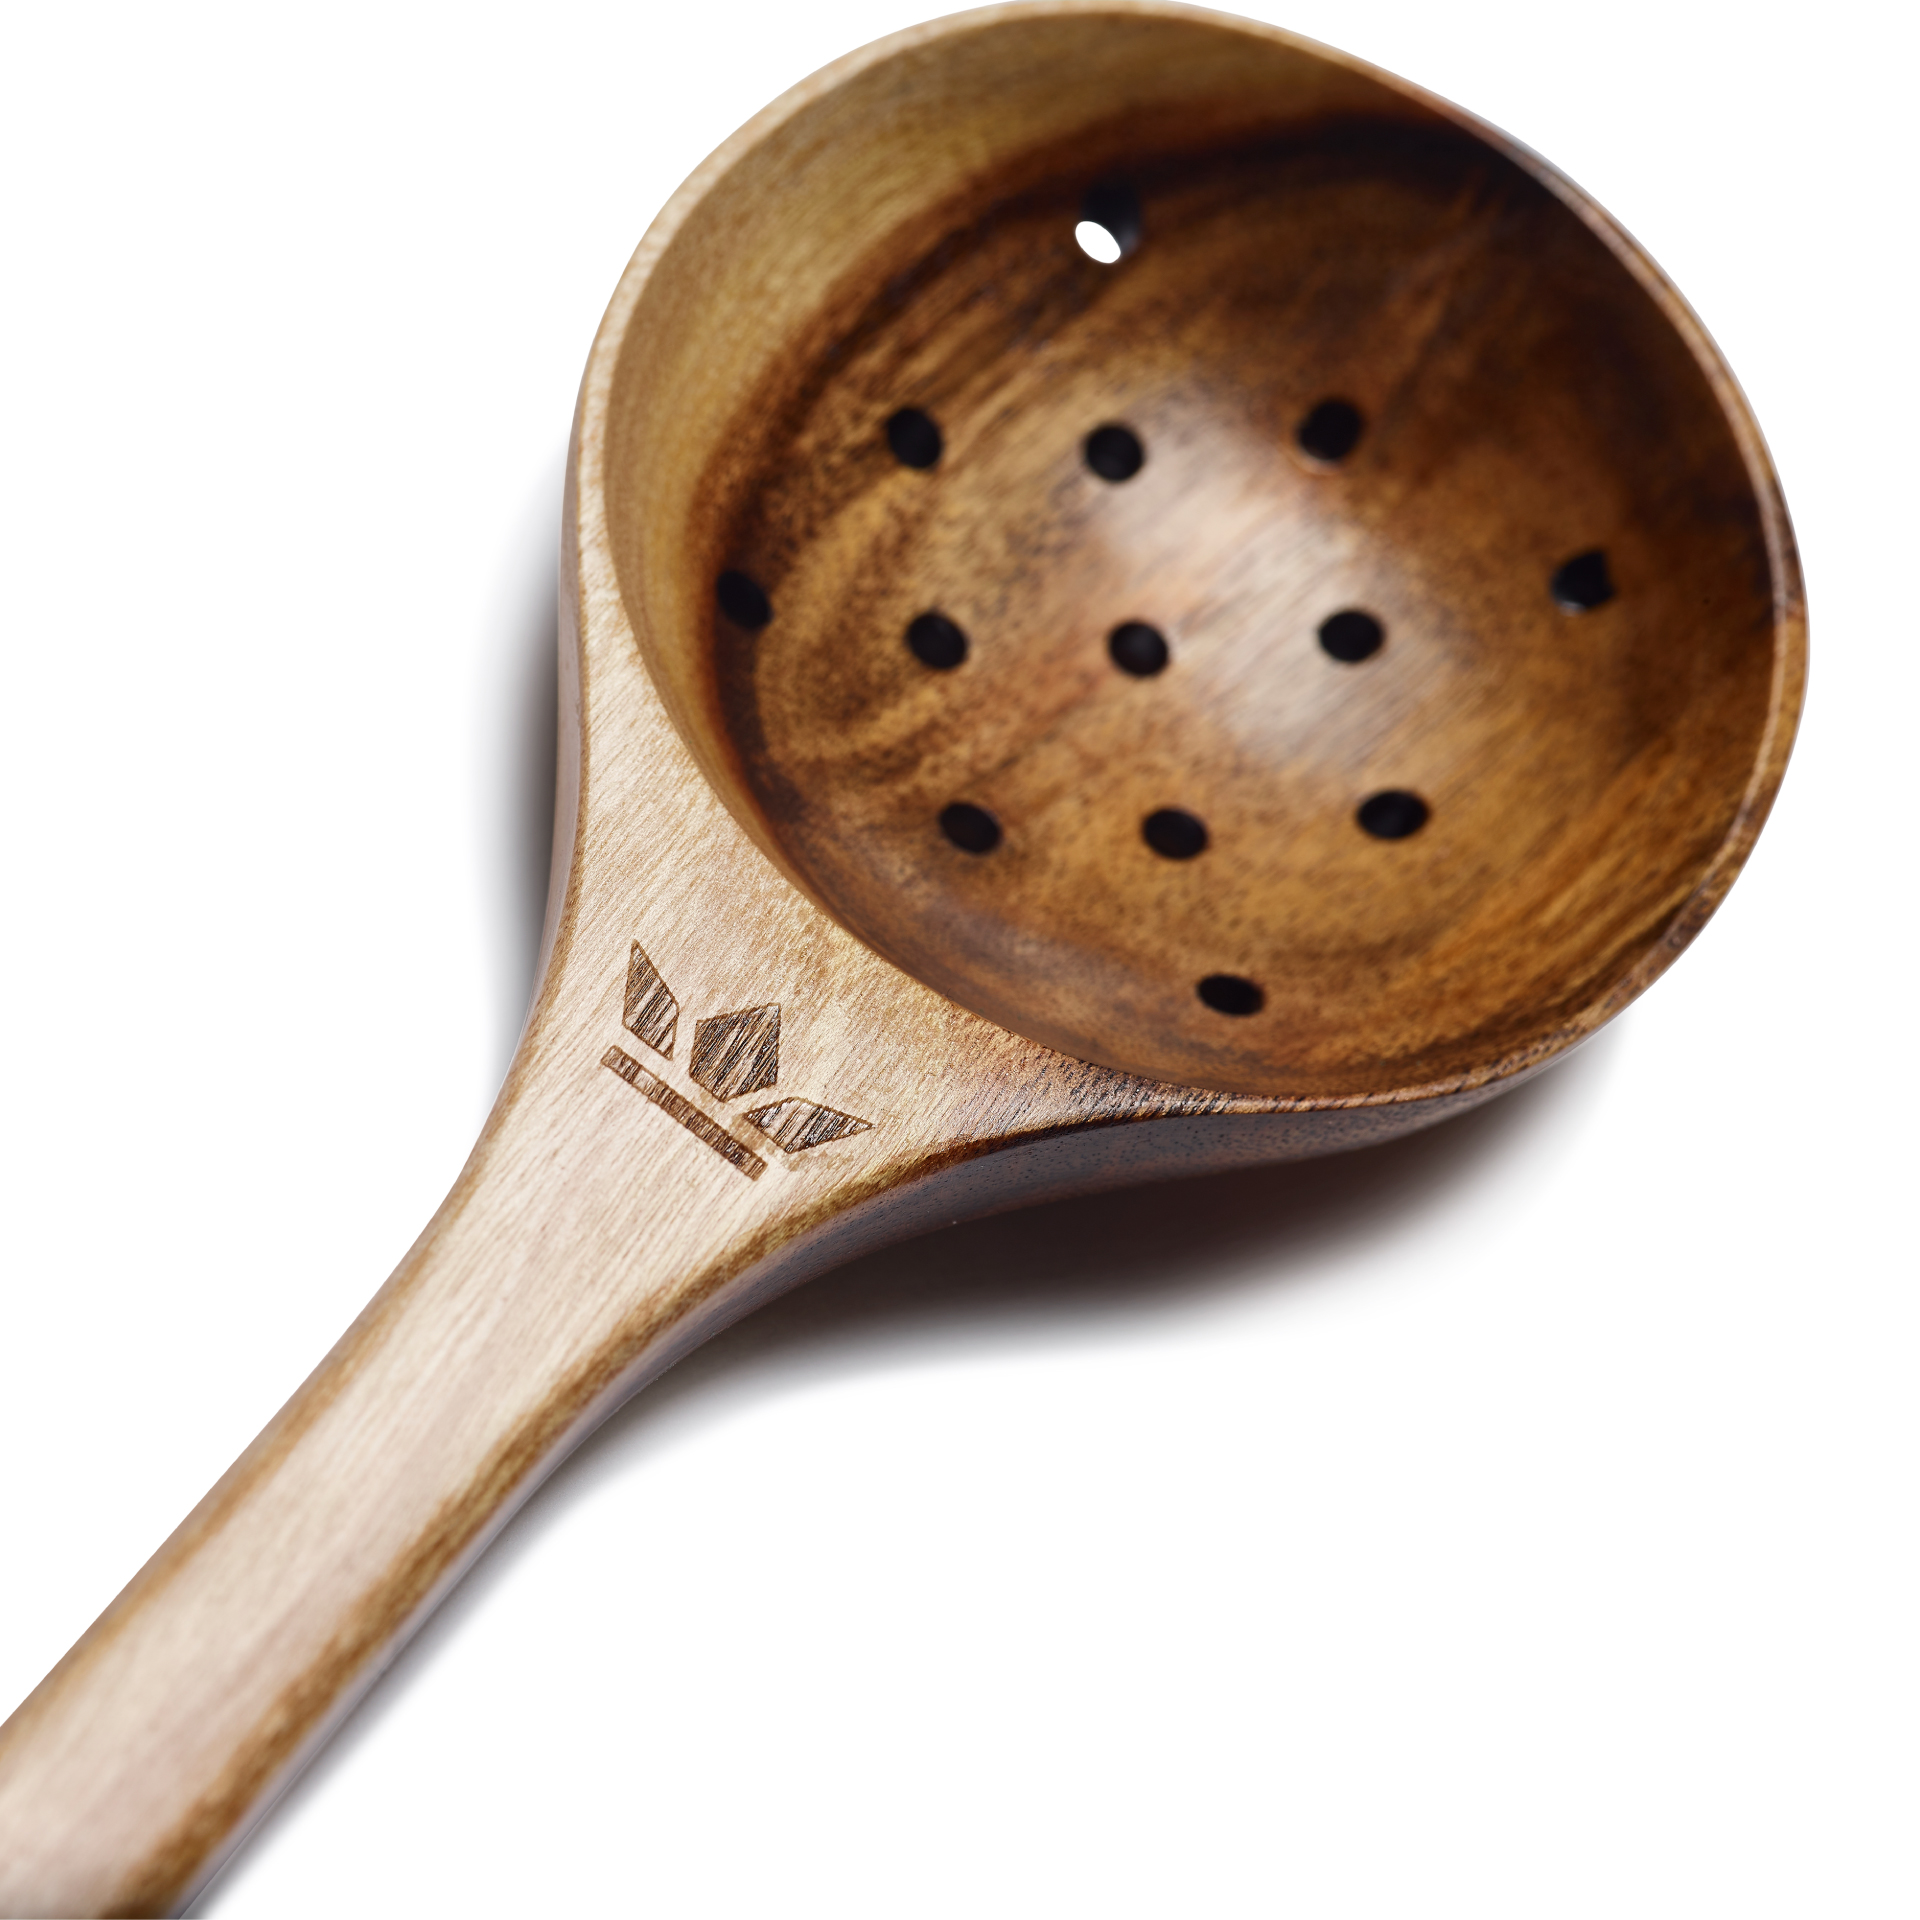 Wooden Utensil Spoon & Tasting Part